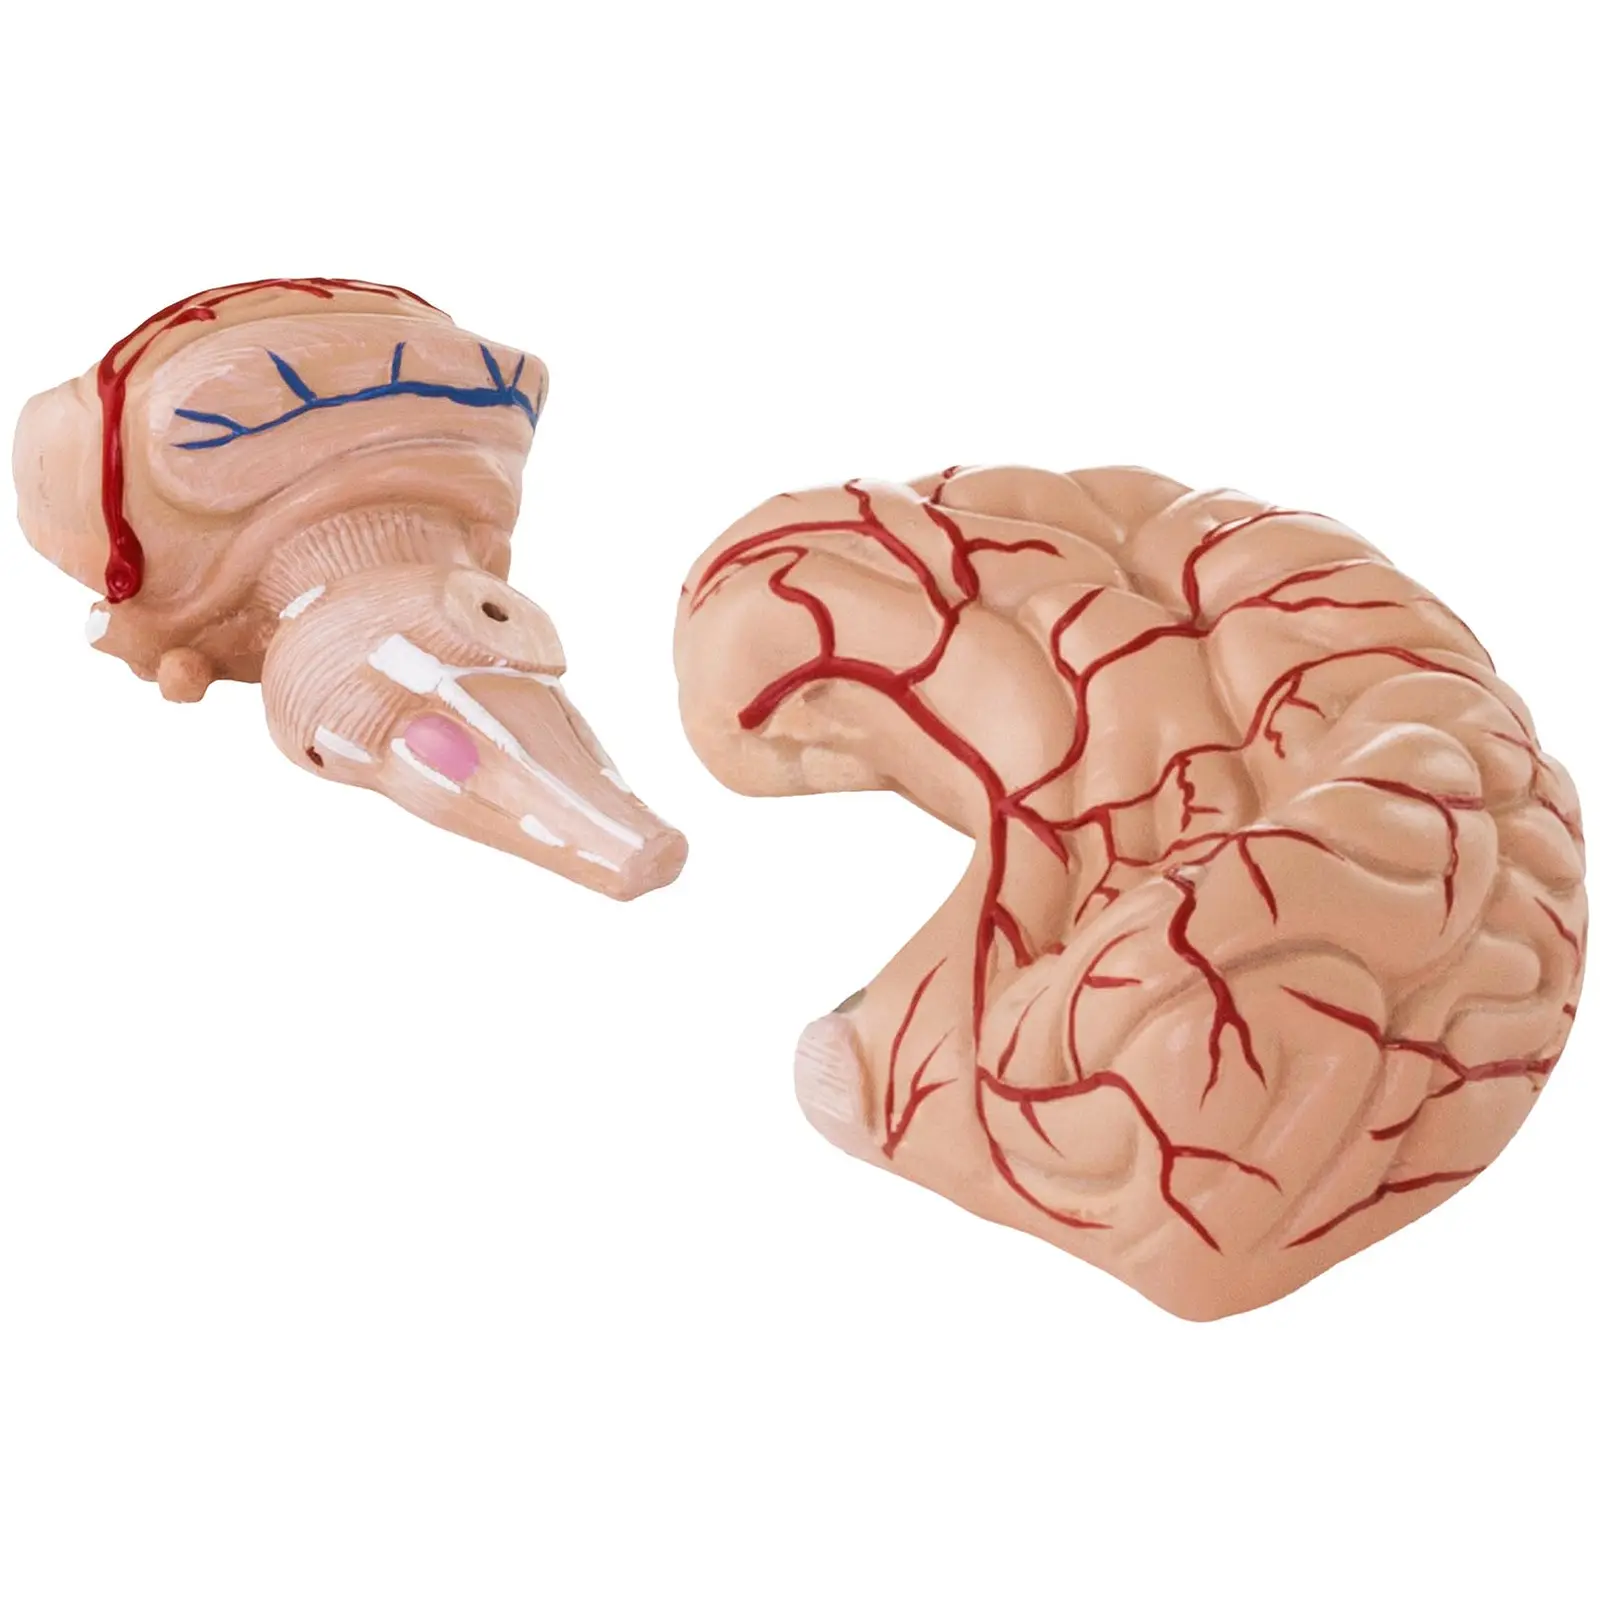 Hjerne - Anatomisk modell